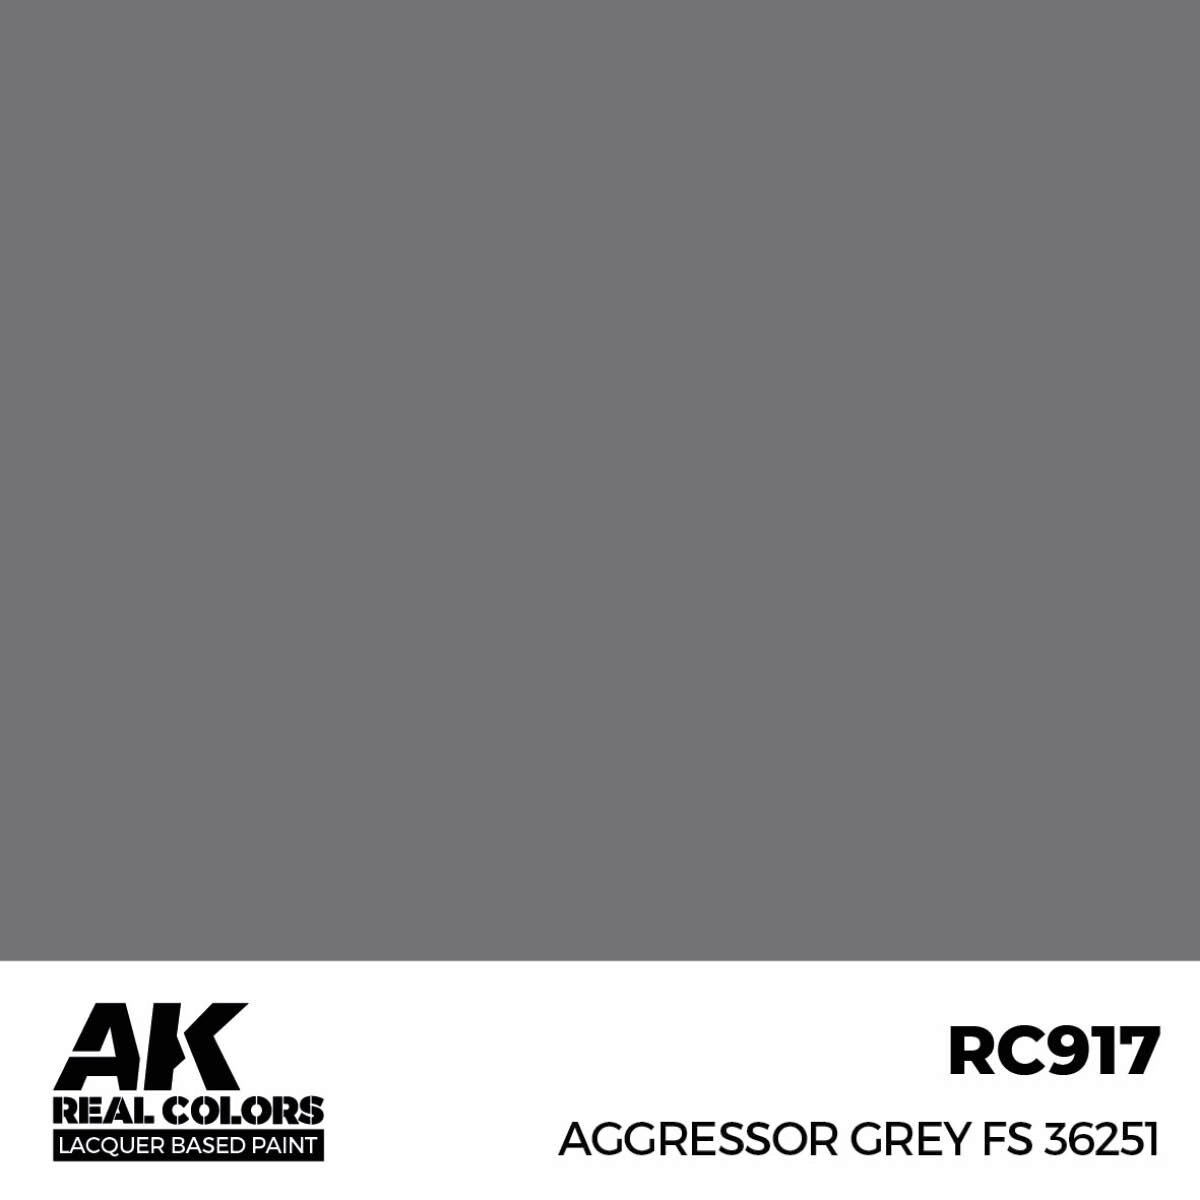 AK RC917 Real Colors Aggressor Grey FS 36251 17 ml.